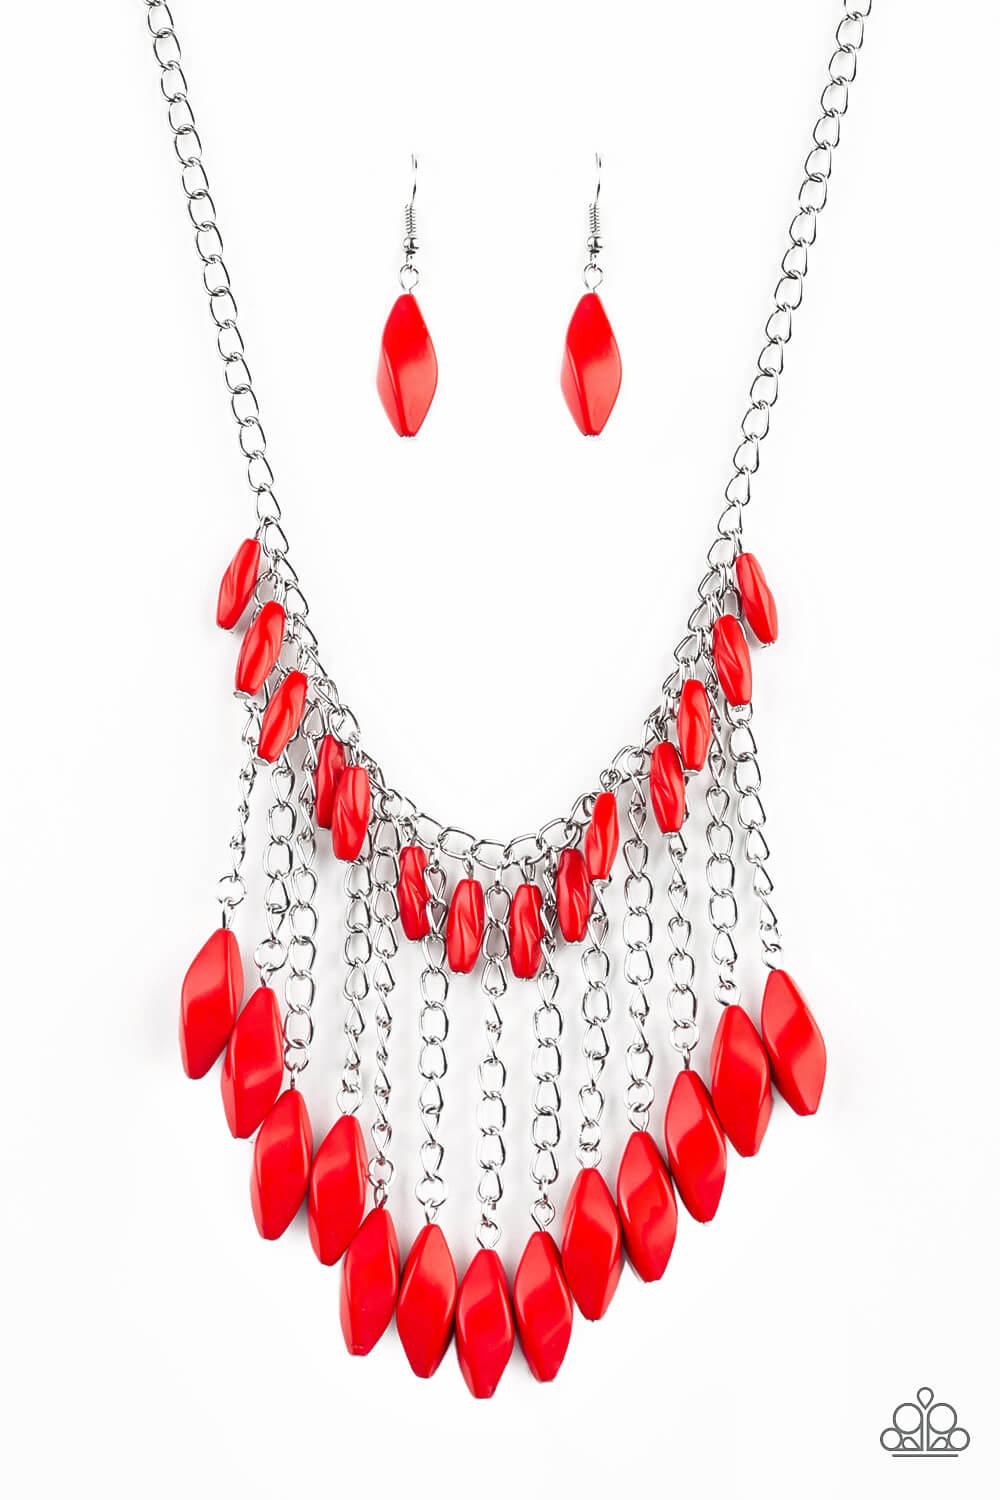 Venturous Vibes - Red Necklace Set - Princess Glam Shop